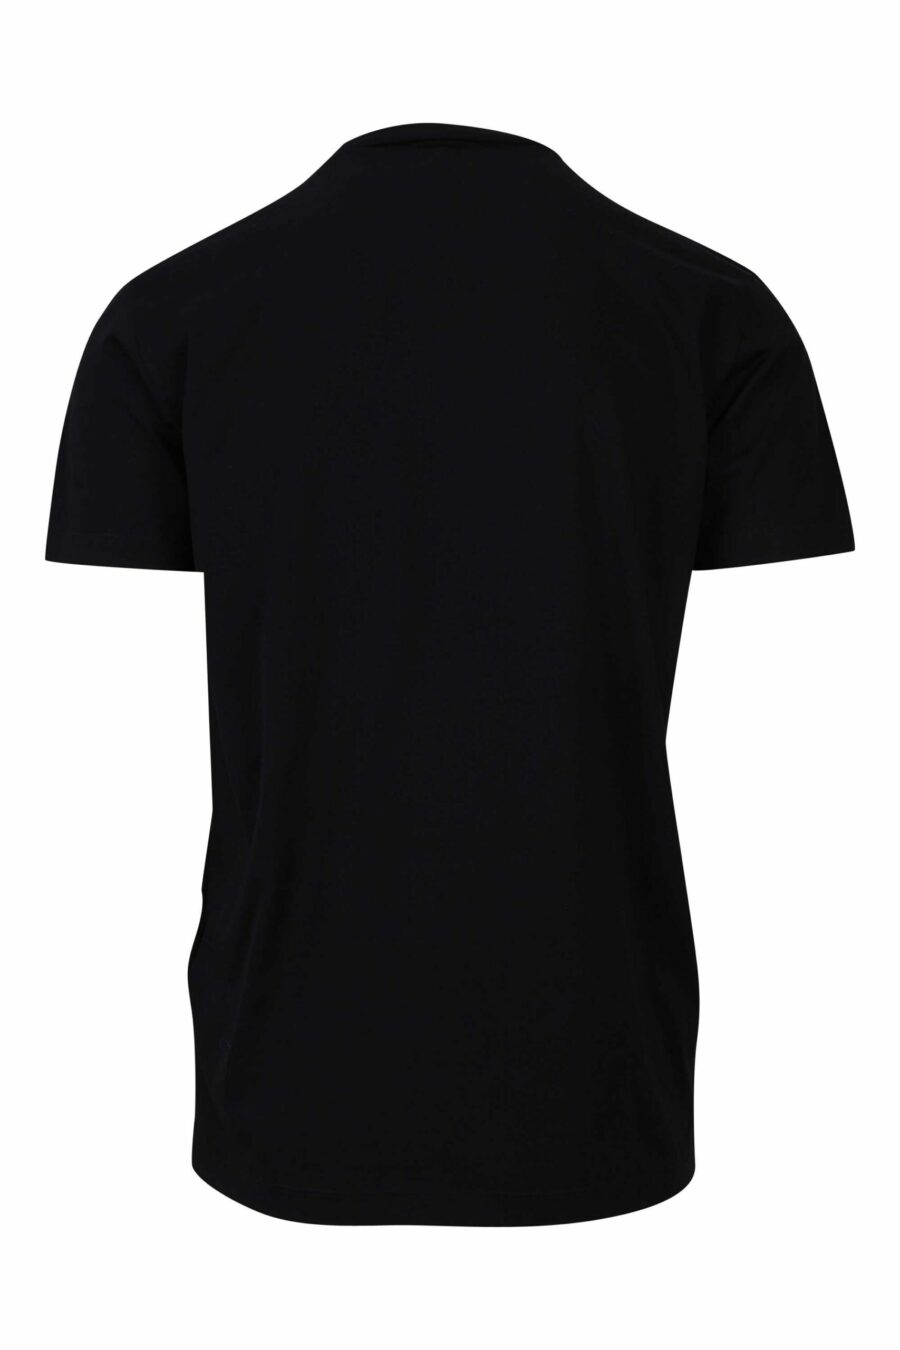 T-shirt preta com maxilogo gótico azul e vermelho - 8054148085940 1 1 à escala